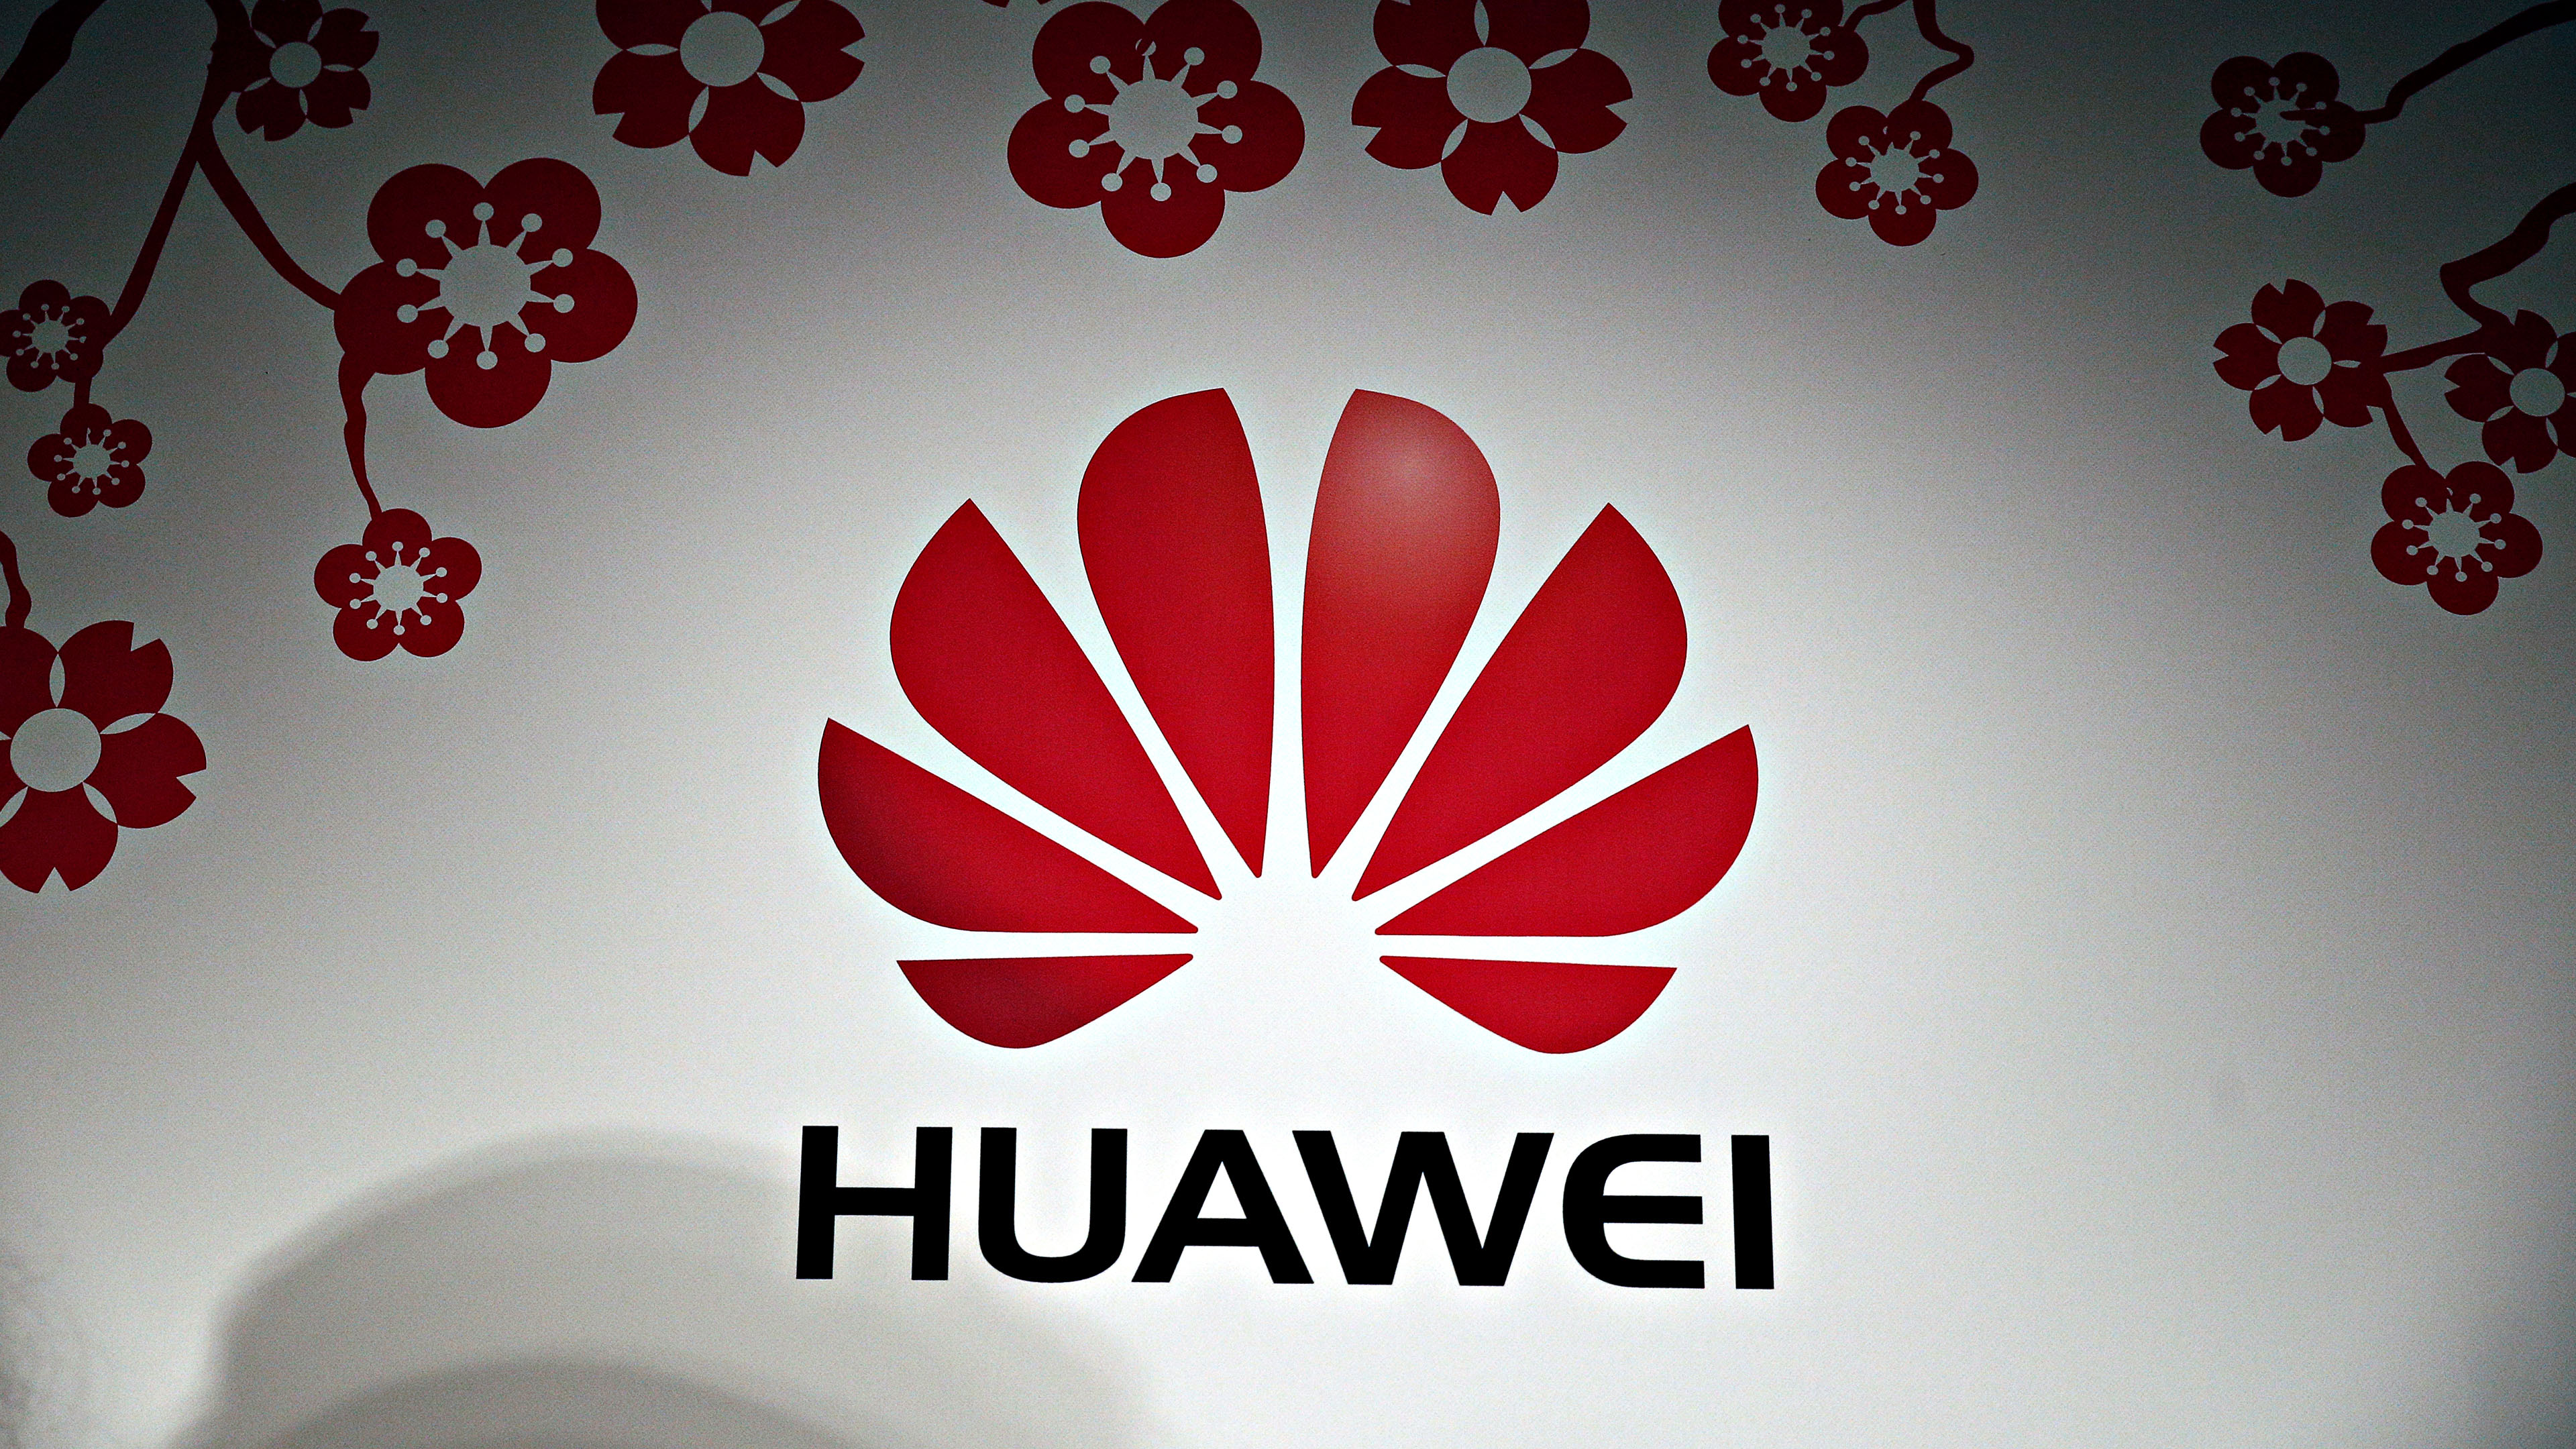 Обои с логотипом Huawei